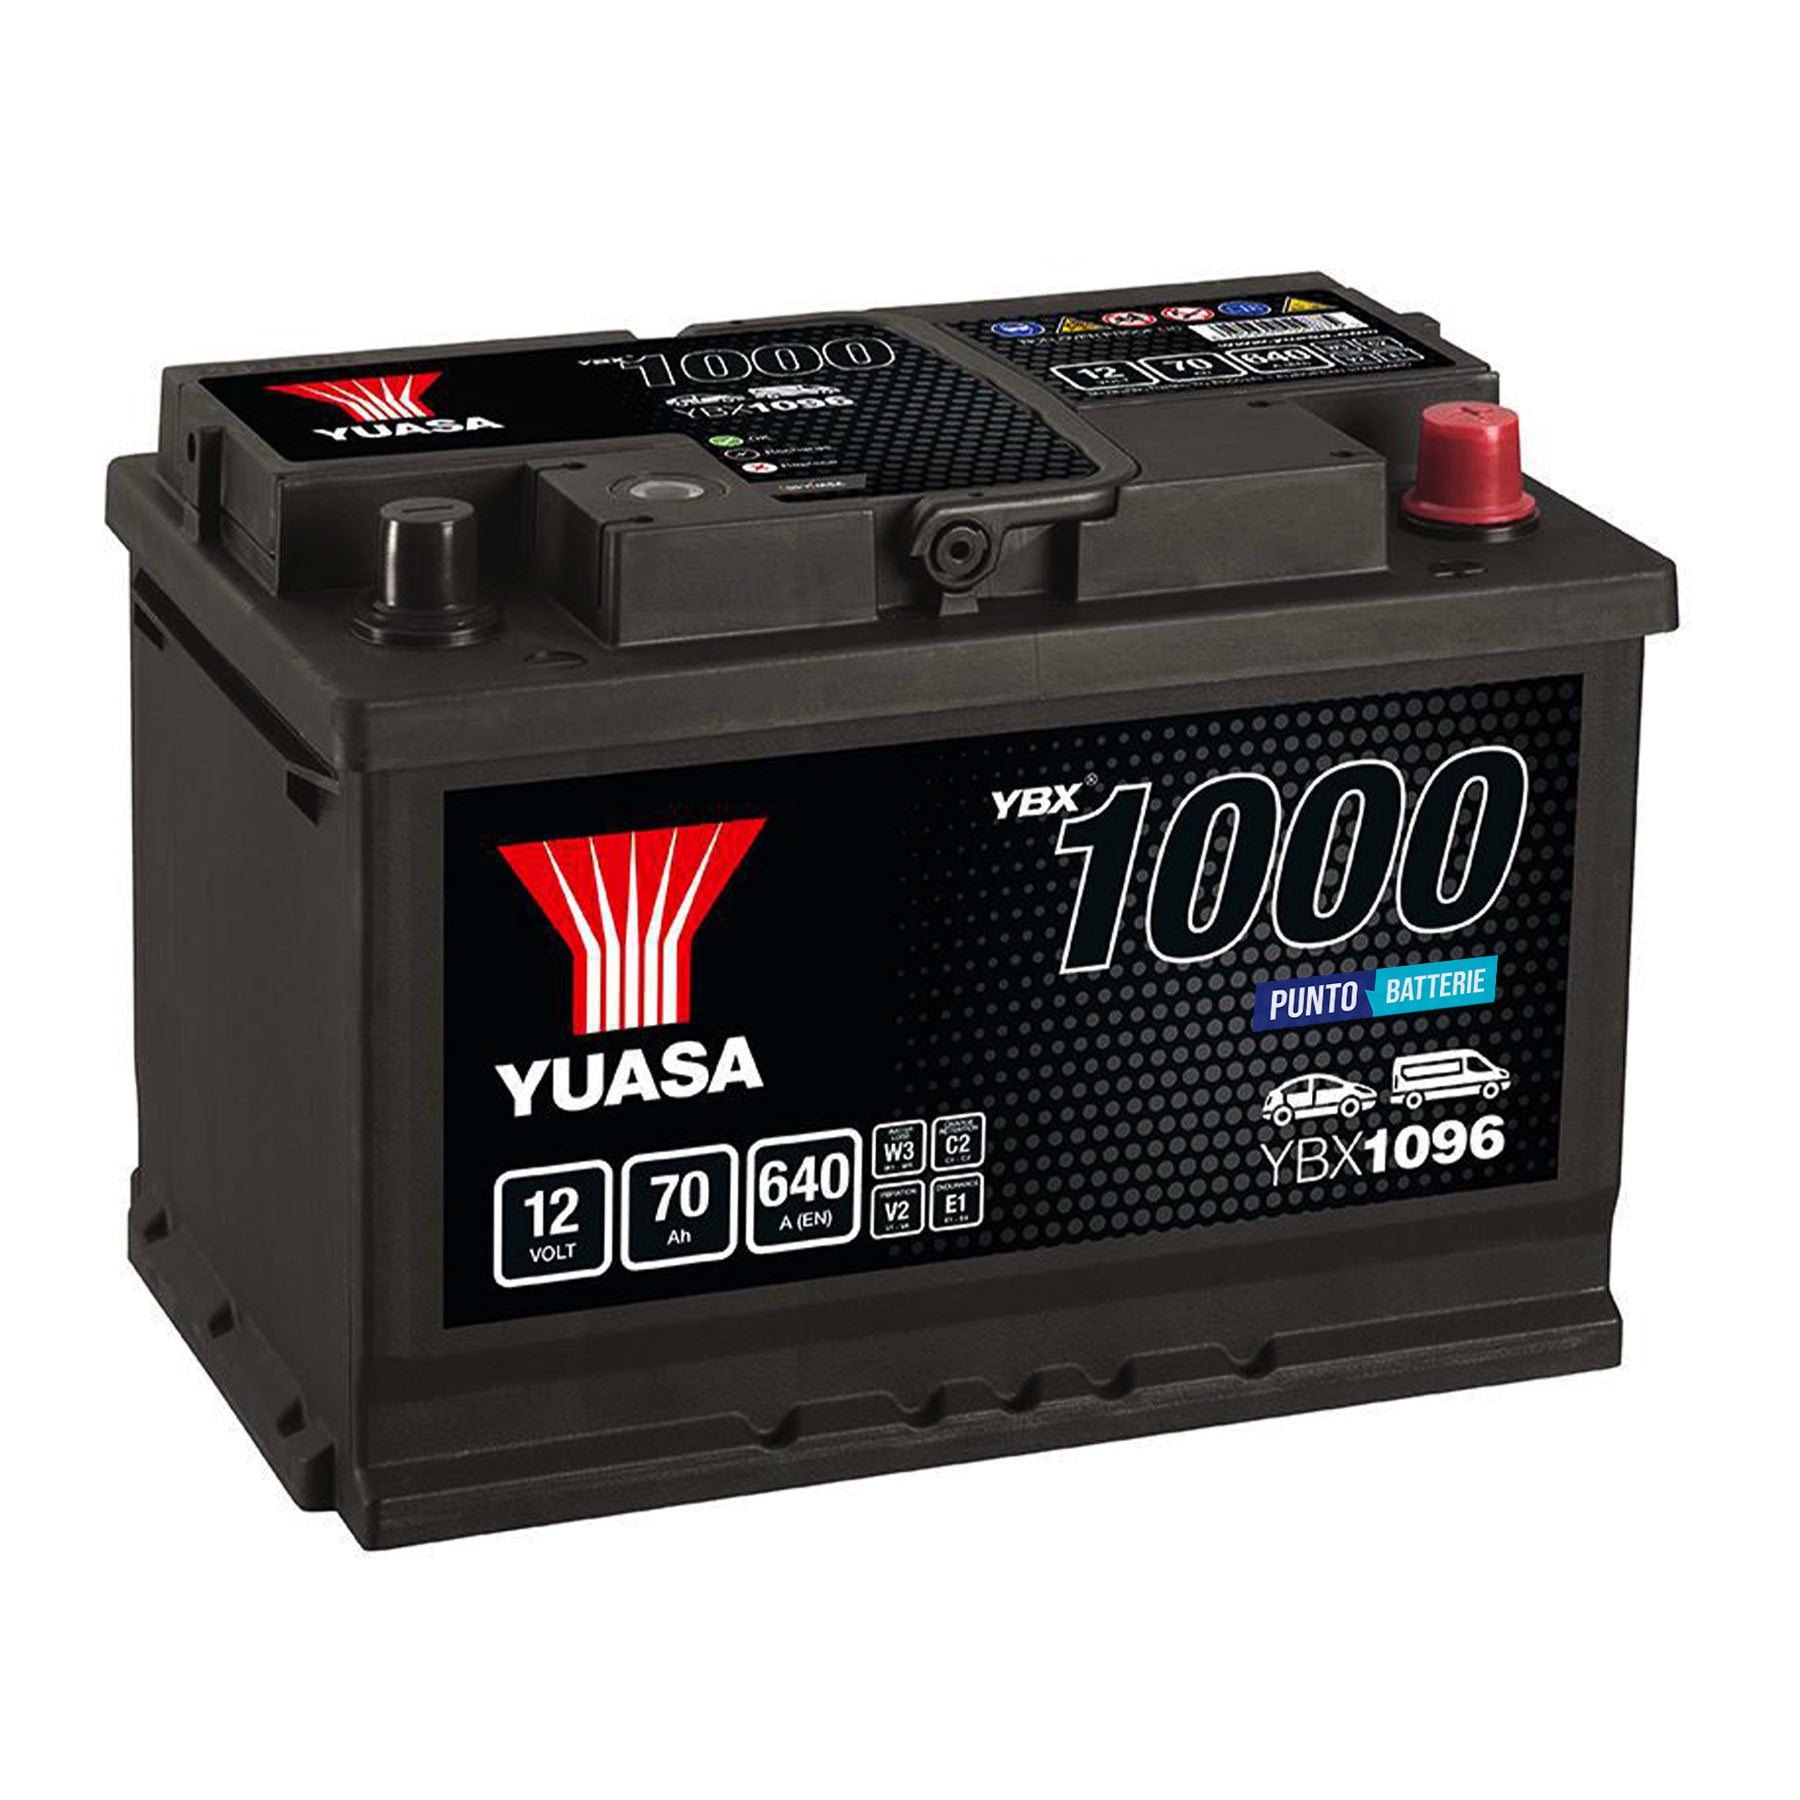 Batteria originale Yuasa YBX1000 YBX1096, dimensioni 278 x 175 x 190, polo positivo a destra, 12 volt, 70 amperora, 640 ampere. Batteria per auto e veicoli leggeri.